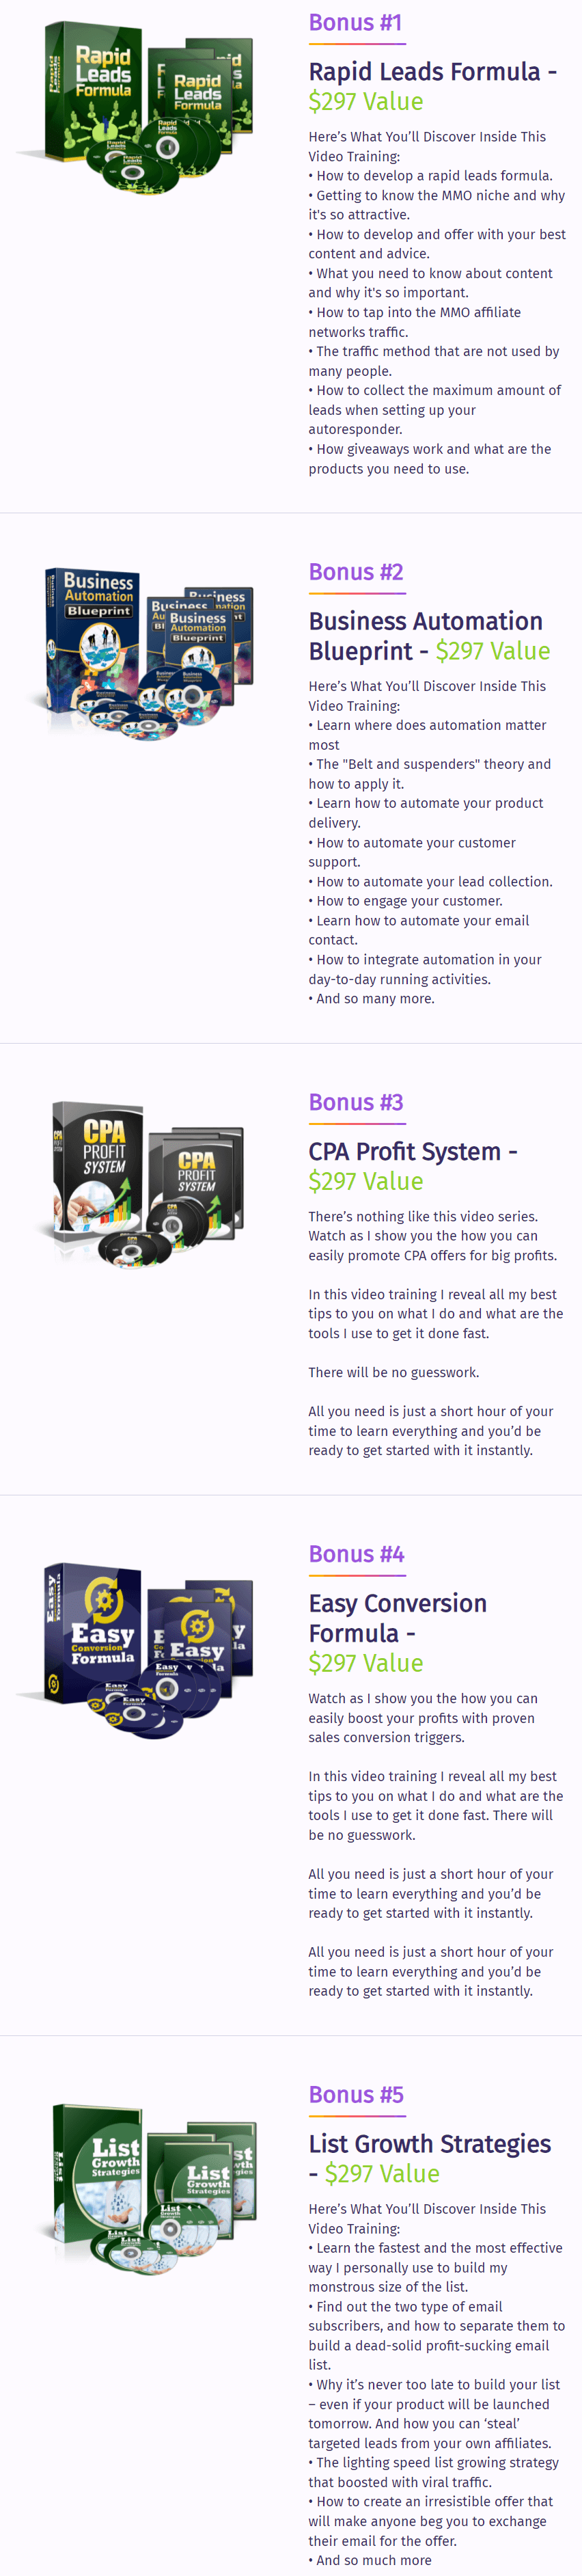 Clickspush-bonus